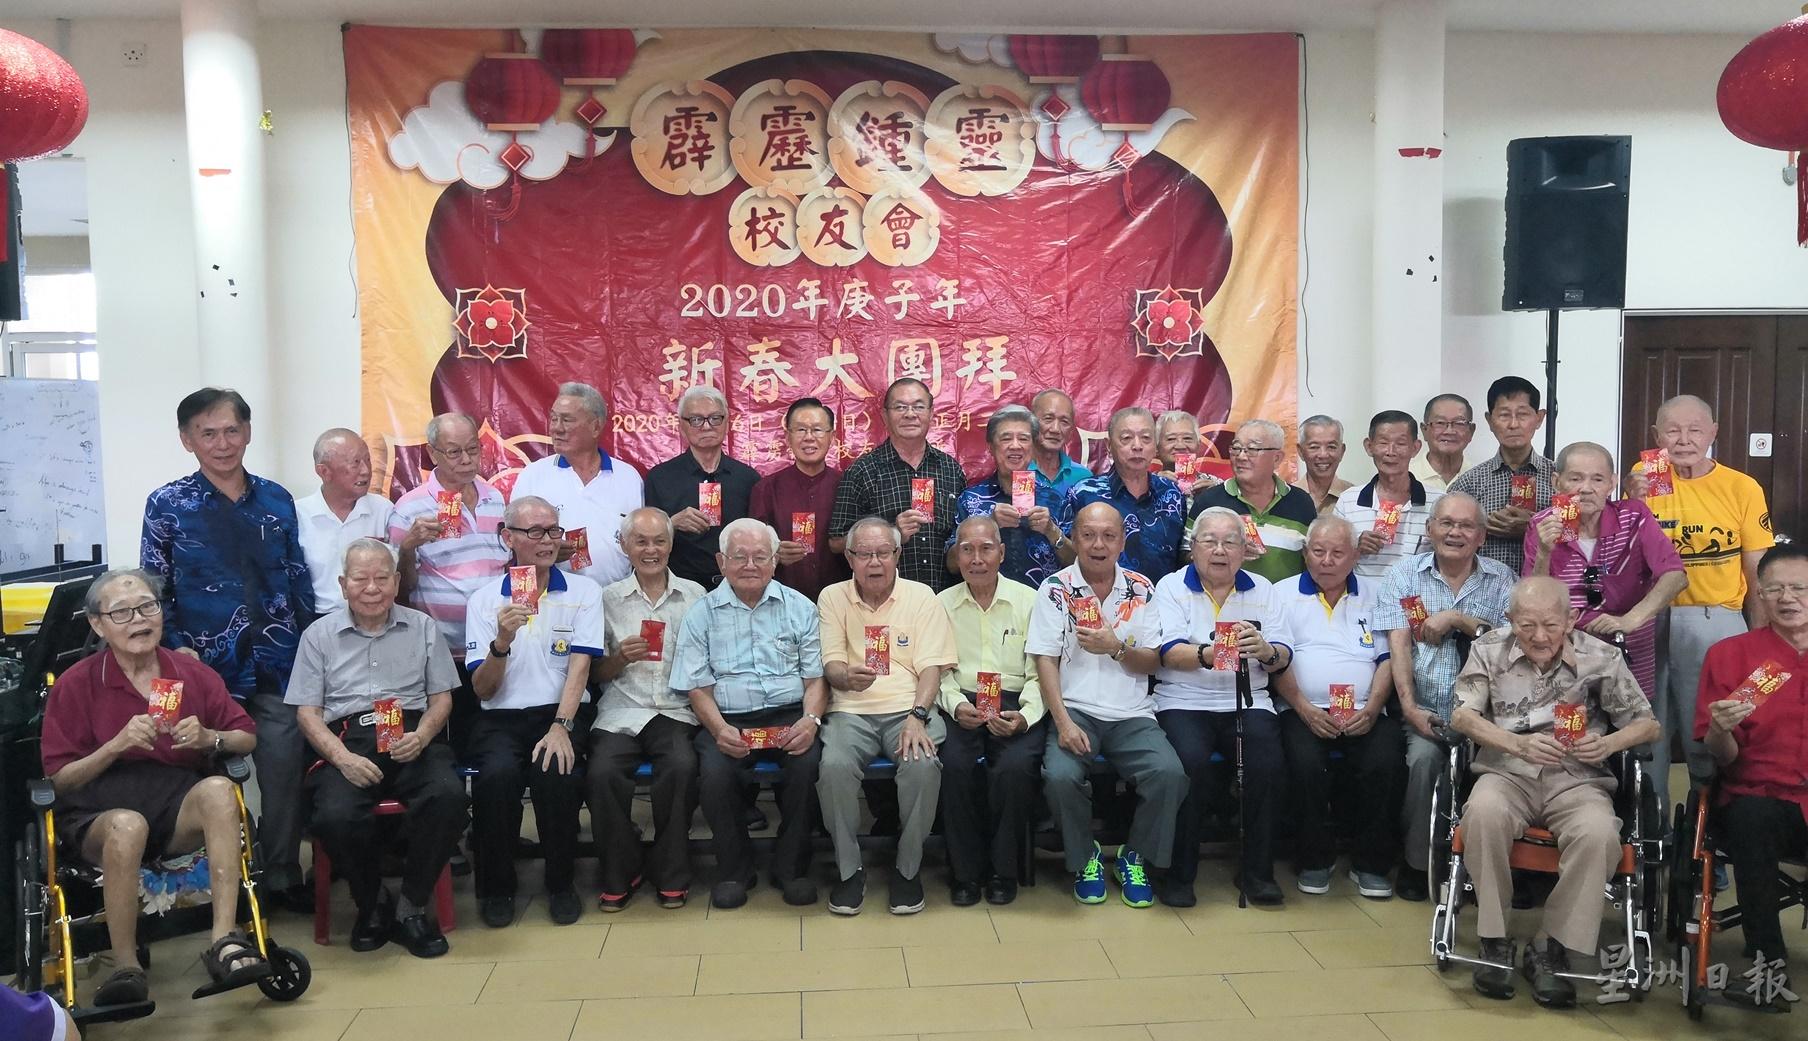 霹雳锺灵校友会发扬孝亲敬老精神，颁发红包予34名年过80岁的校友。左一为张叔权、左八张庆强；右八陈苍松。

